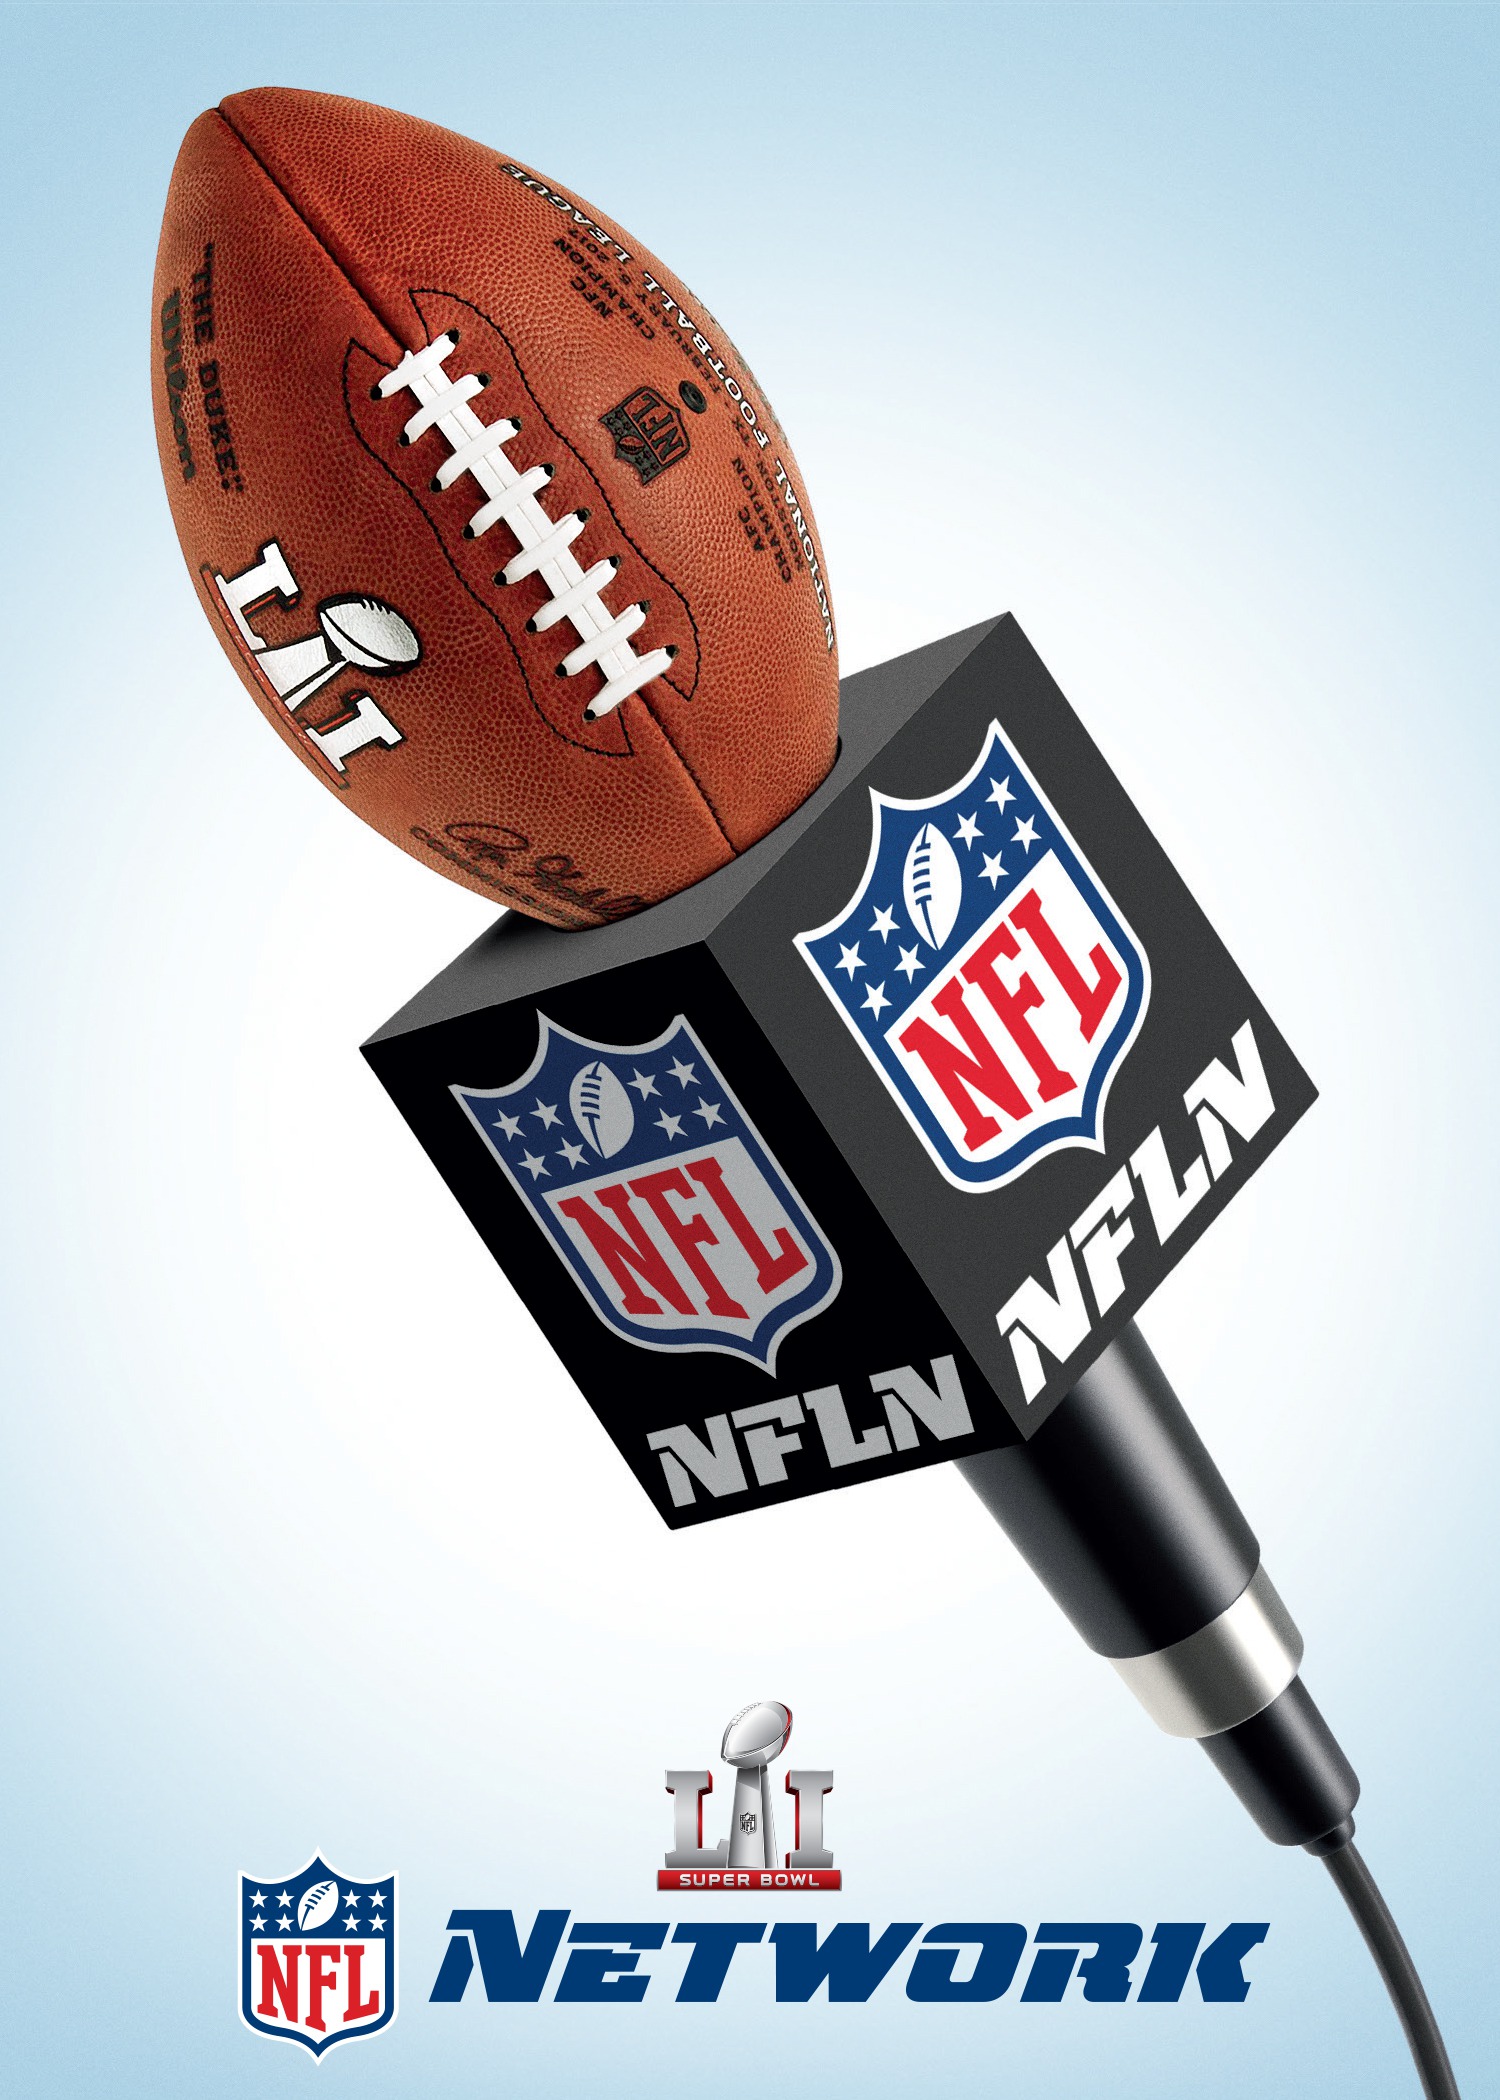 Mega Sized TV Poster Image for NFL Network Super Bowl 